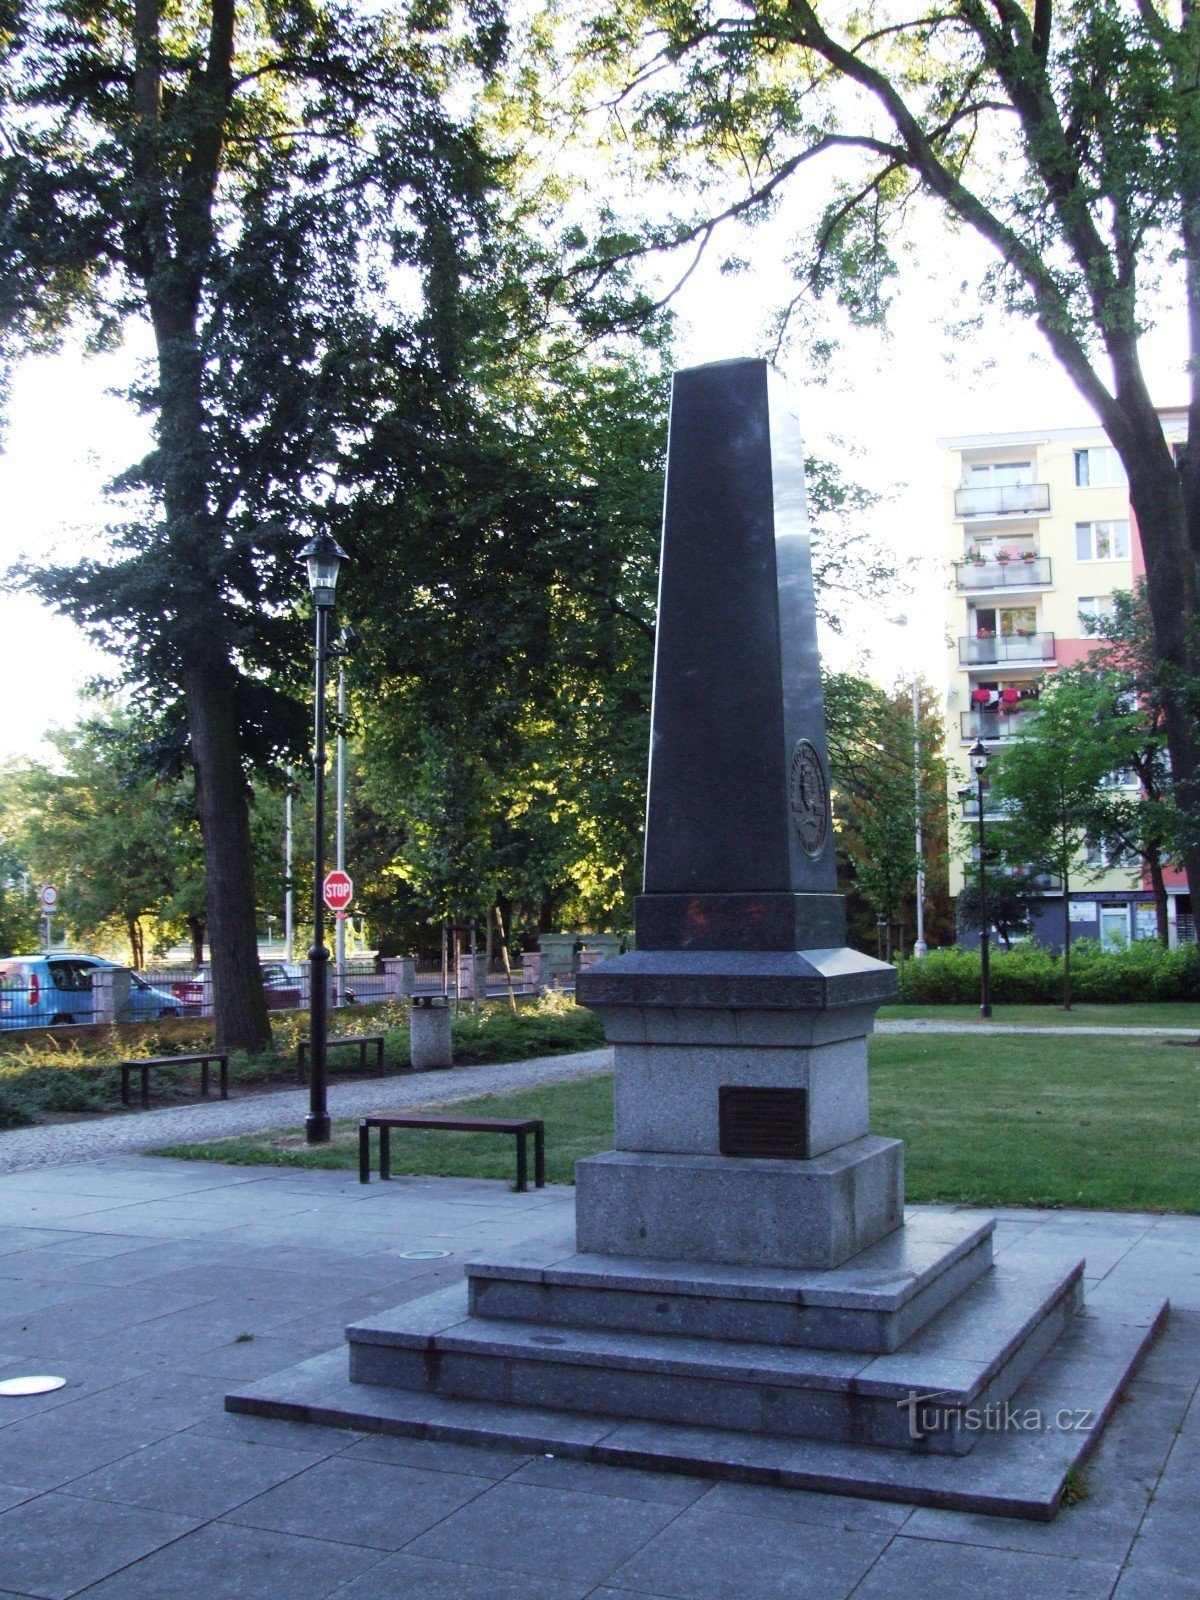 Monument pour honorer la mémoire des victimes des guerres